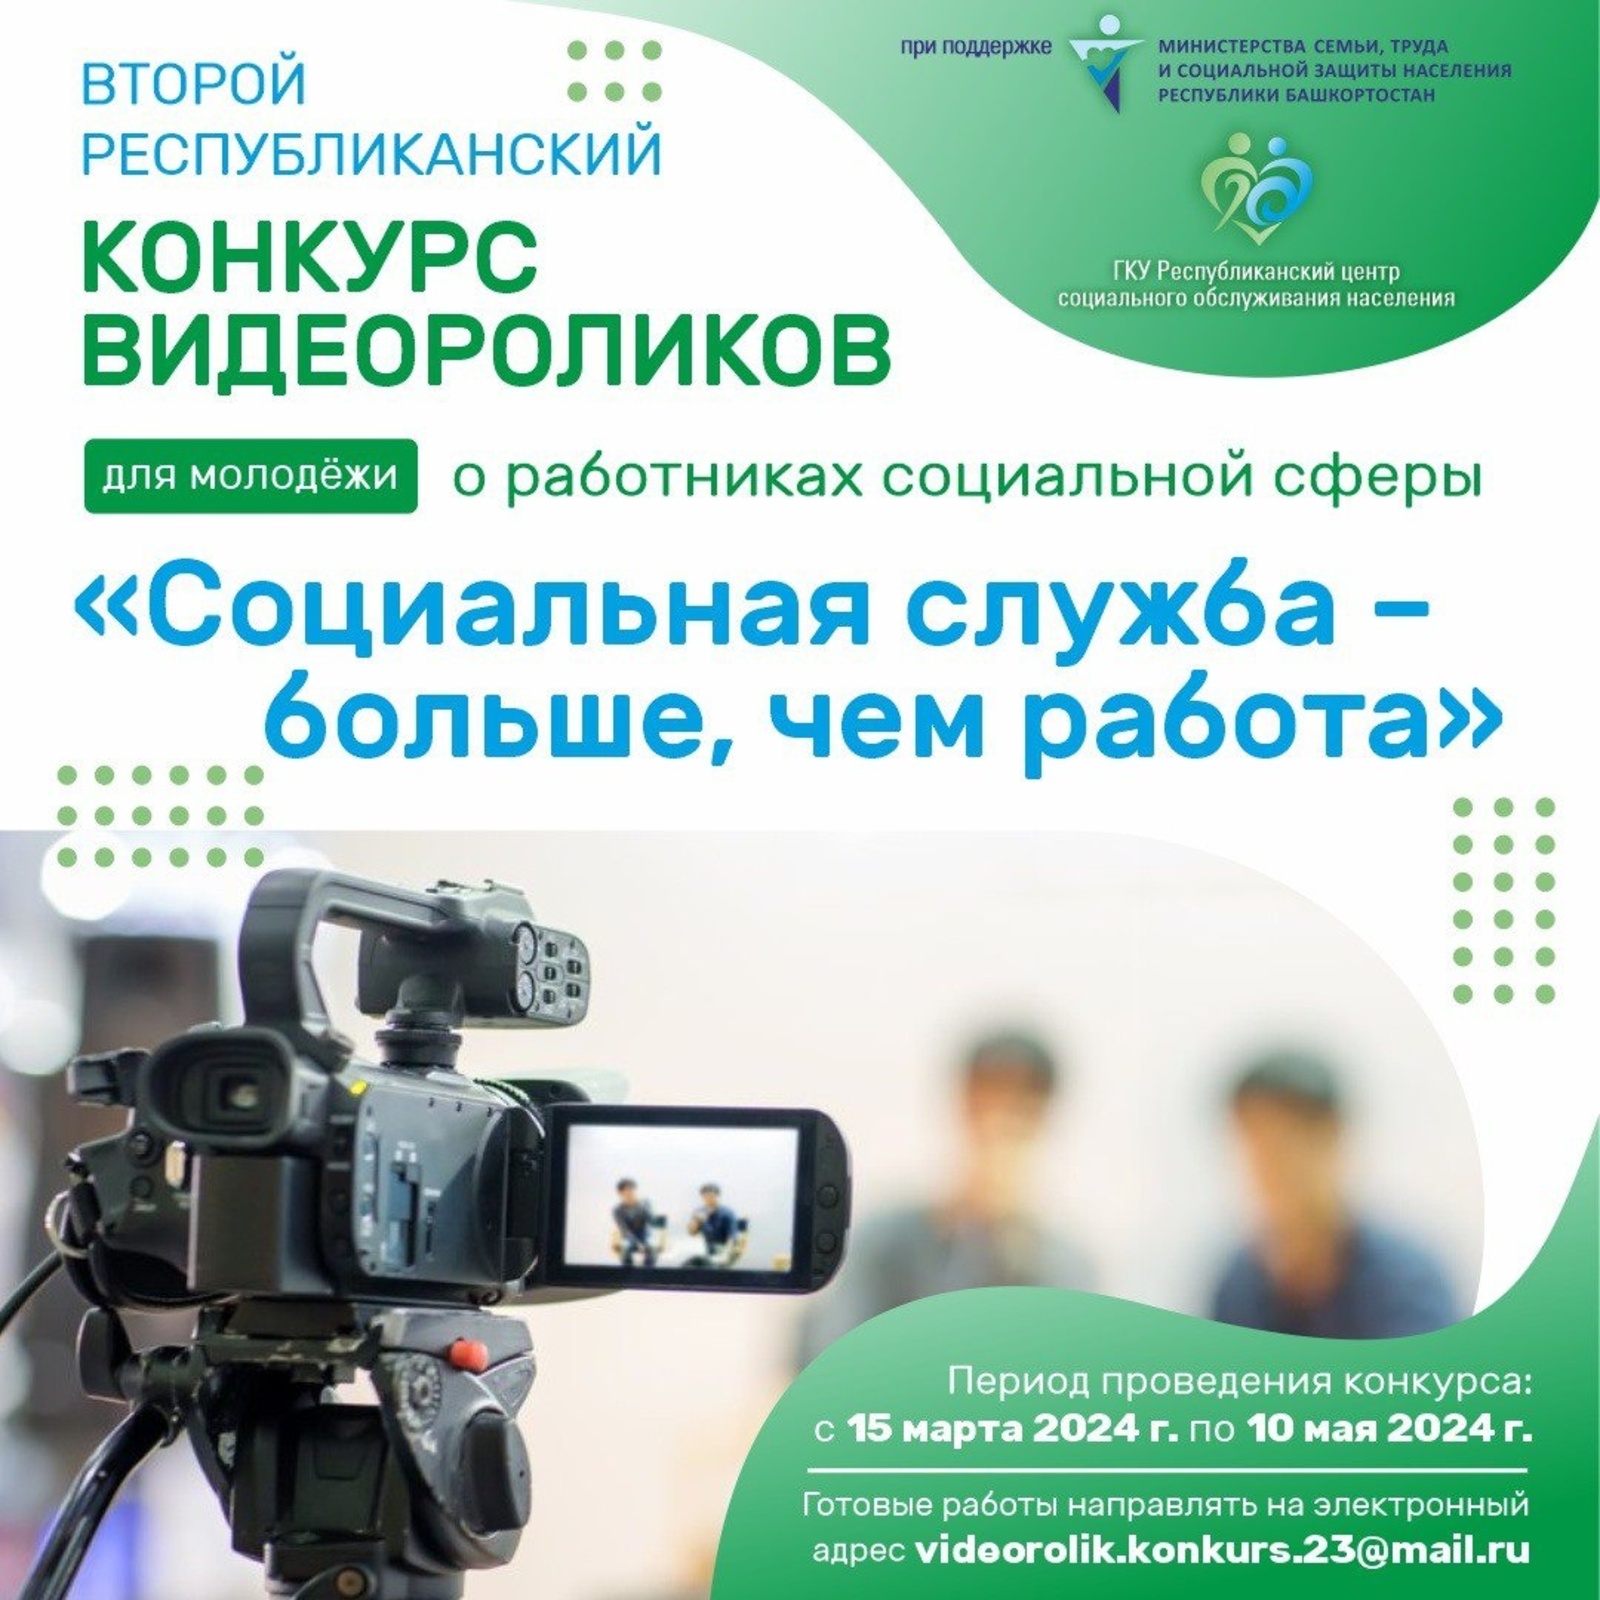 В Башкирии продолжается конкурс на лучший видеоролик о социальных работниках